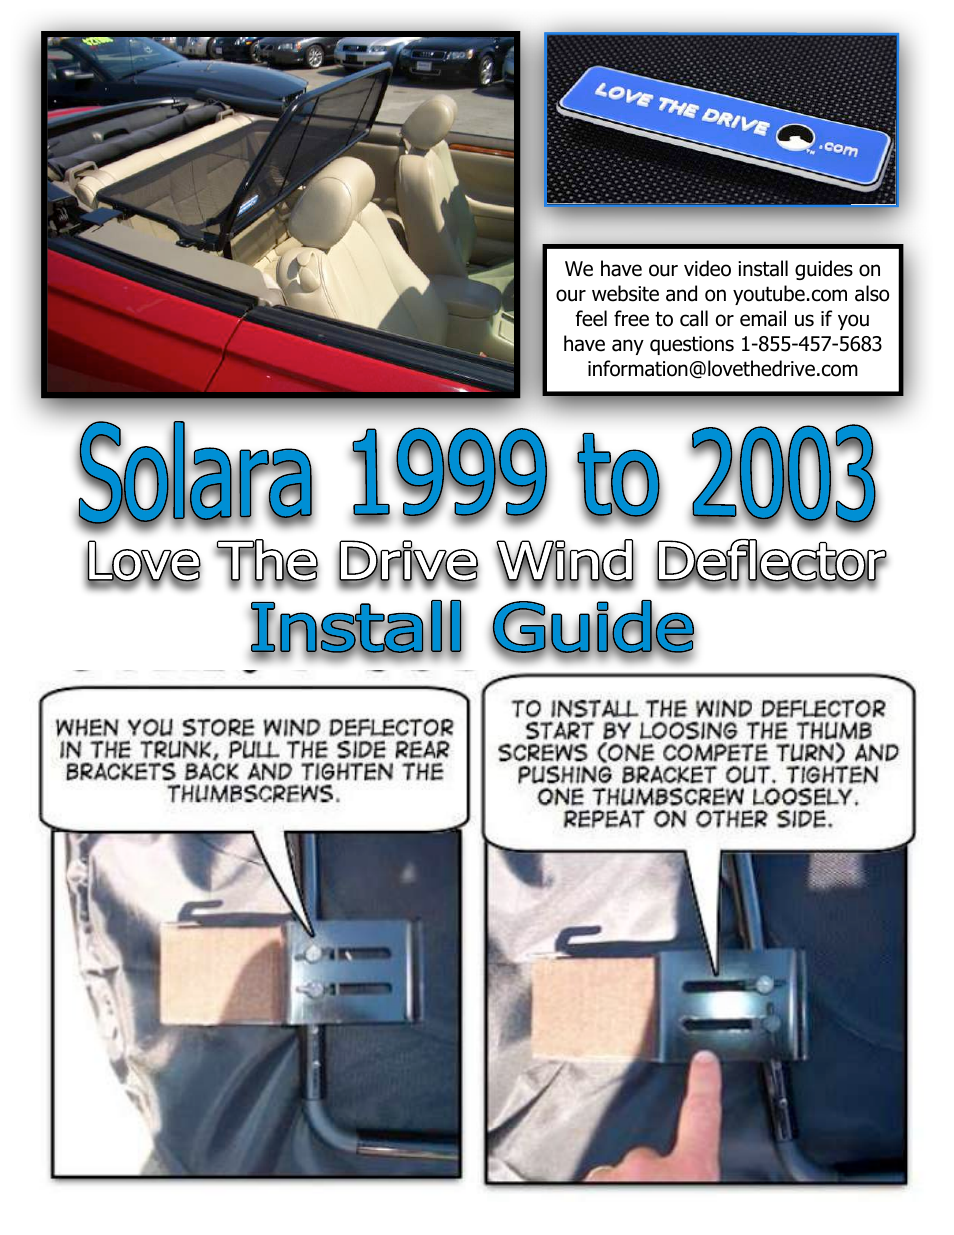 Solara Wind Deflector 1999 to 2003